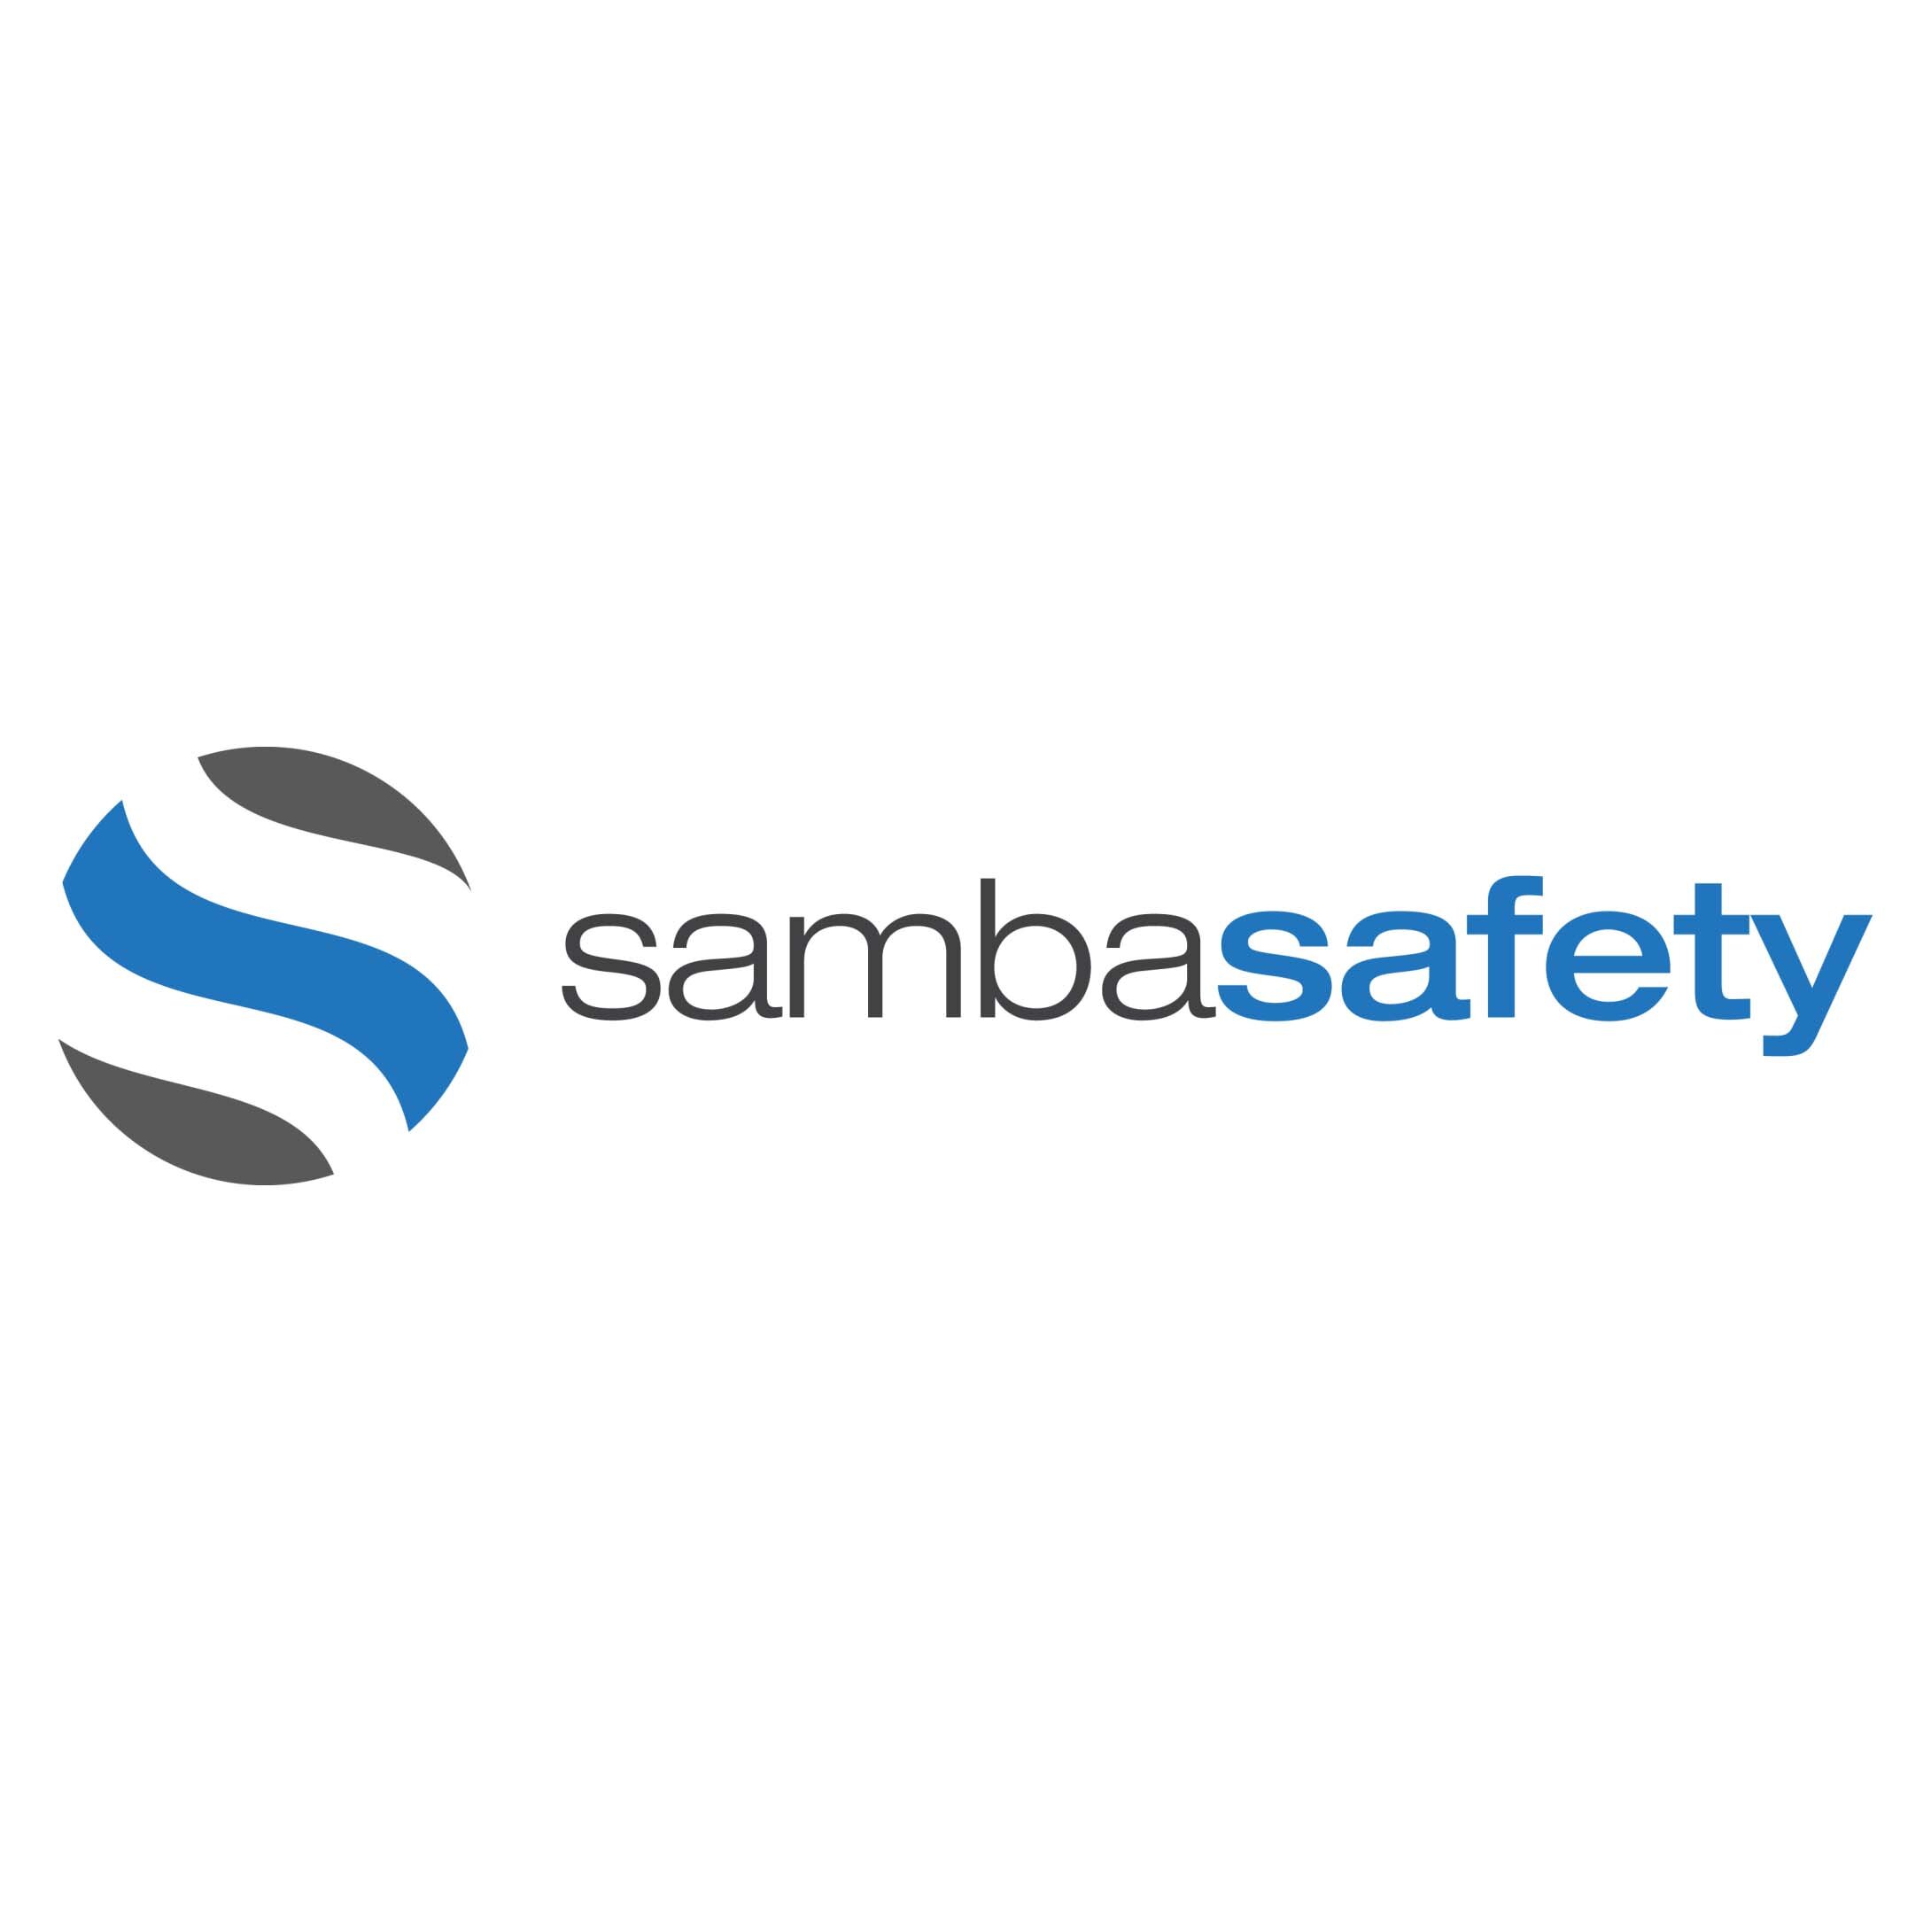 SambaSafety Case Study